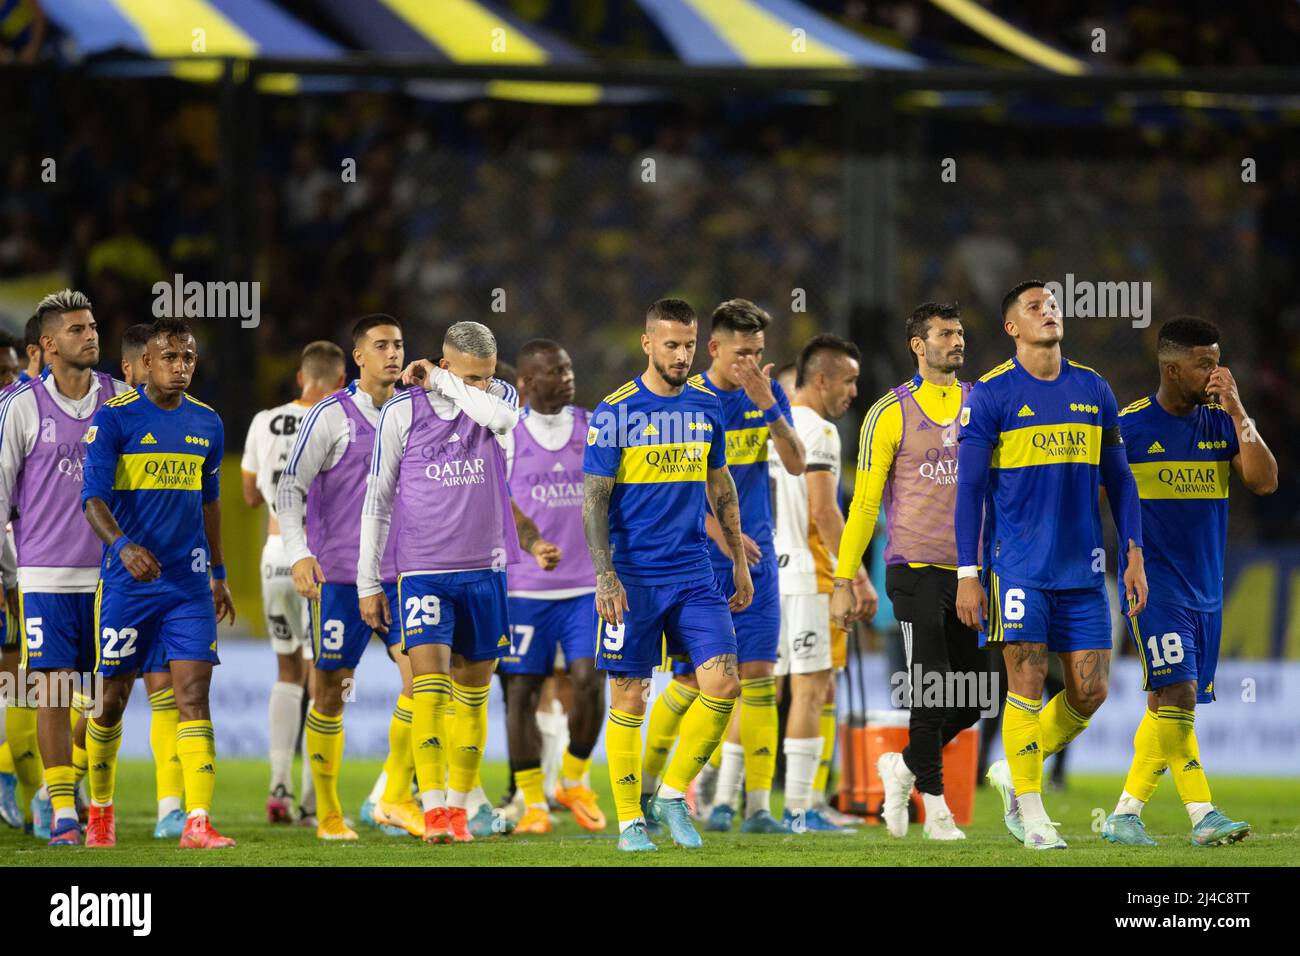 BUENOS AIRES, ARGENTINIEN - 3. APRIL: Spieler von Boca Juniors nach dem letzten Pfiff des Spiels zwischen Boca Juniors und Arsenal FC im Rahmen von Copa de Stockfoto